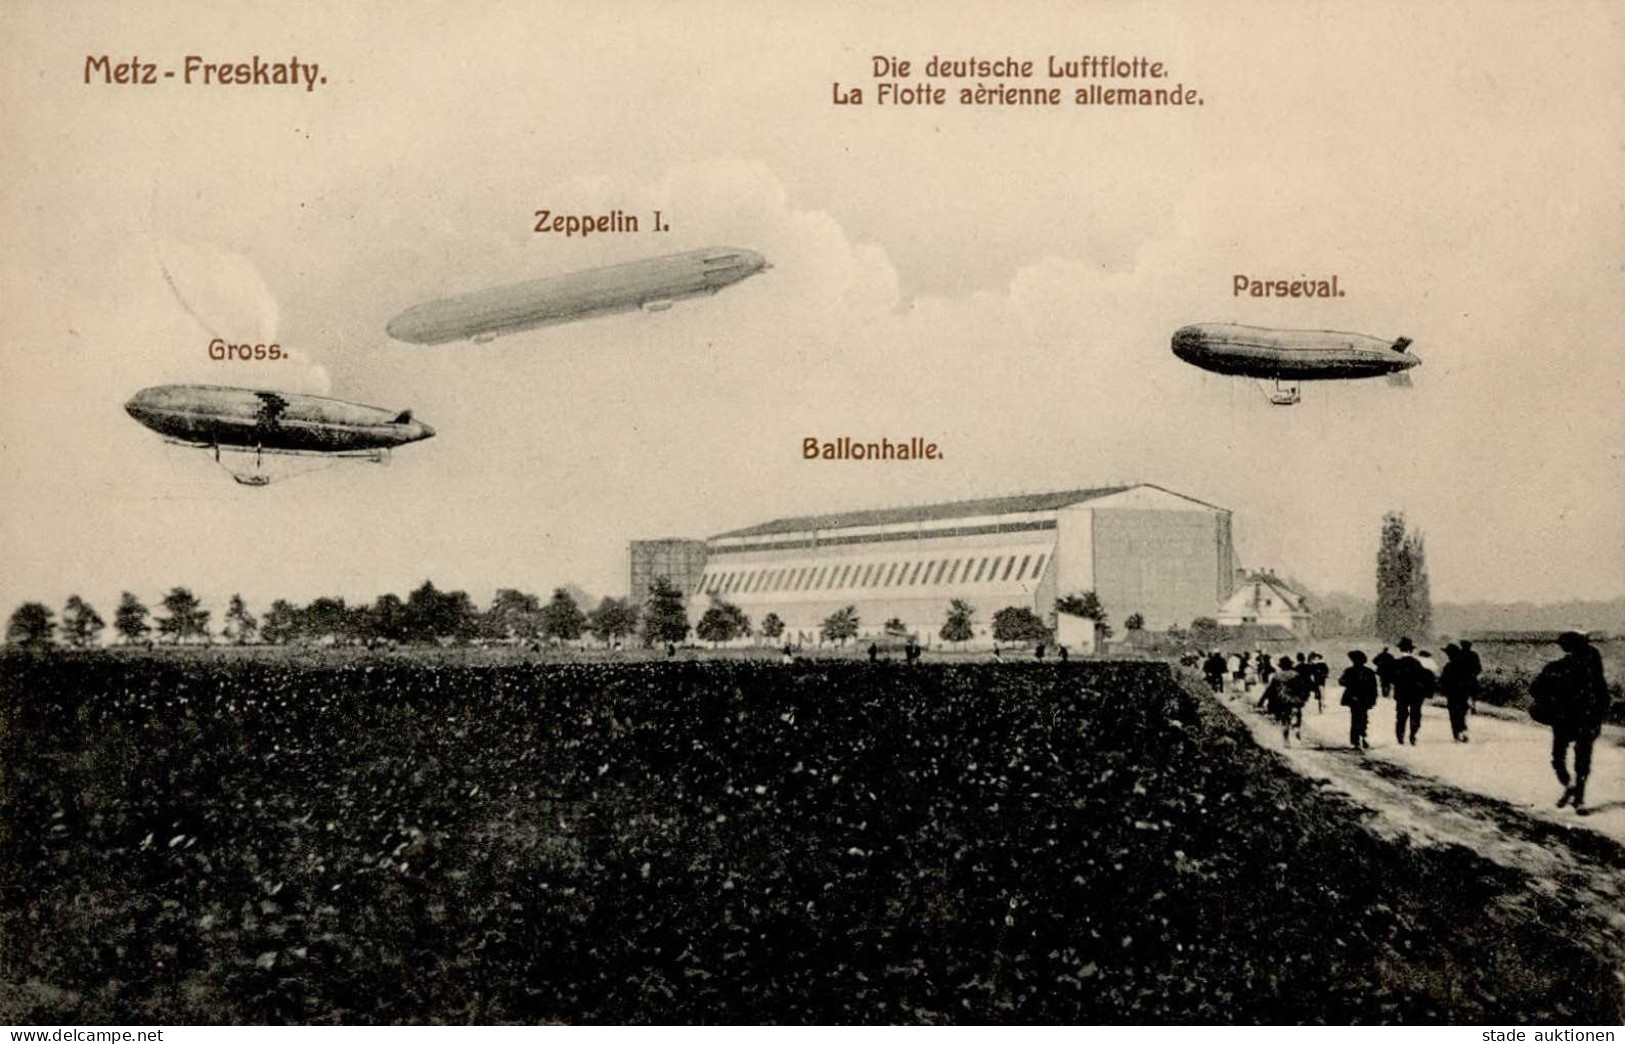 Zeppelin Metz-Freskaty Ballonhalle Mit Deutscher Luftflotte I-II Dirigeable - Zeppeline